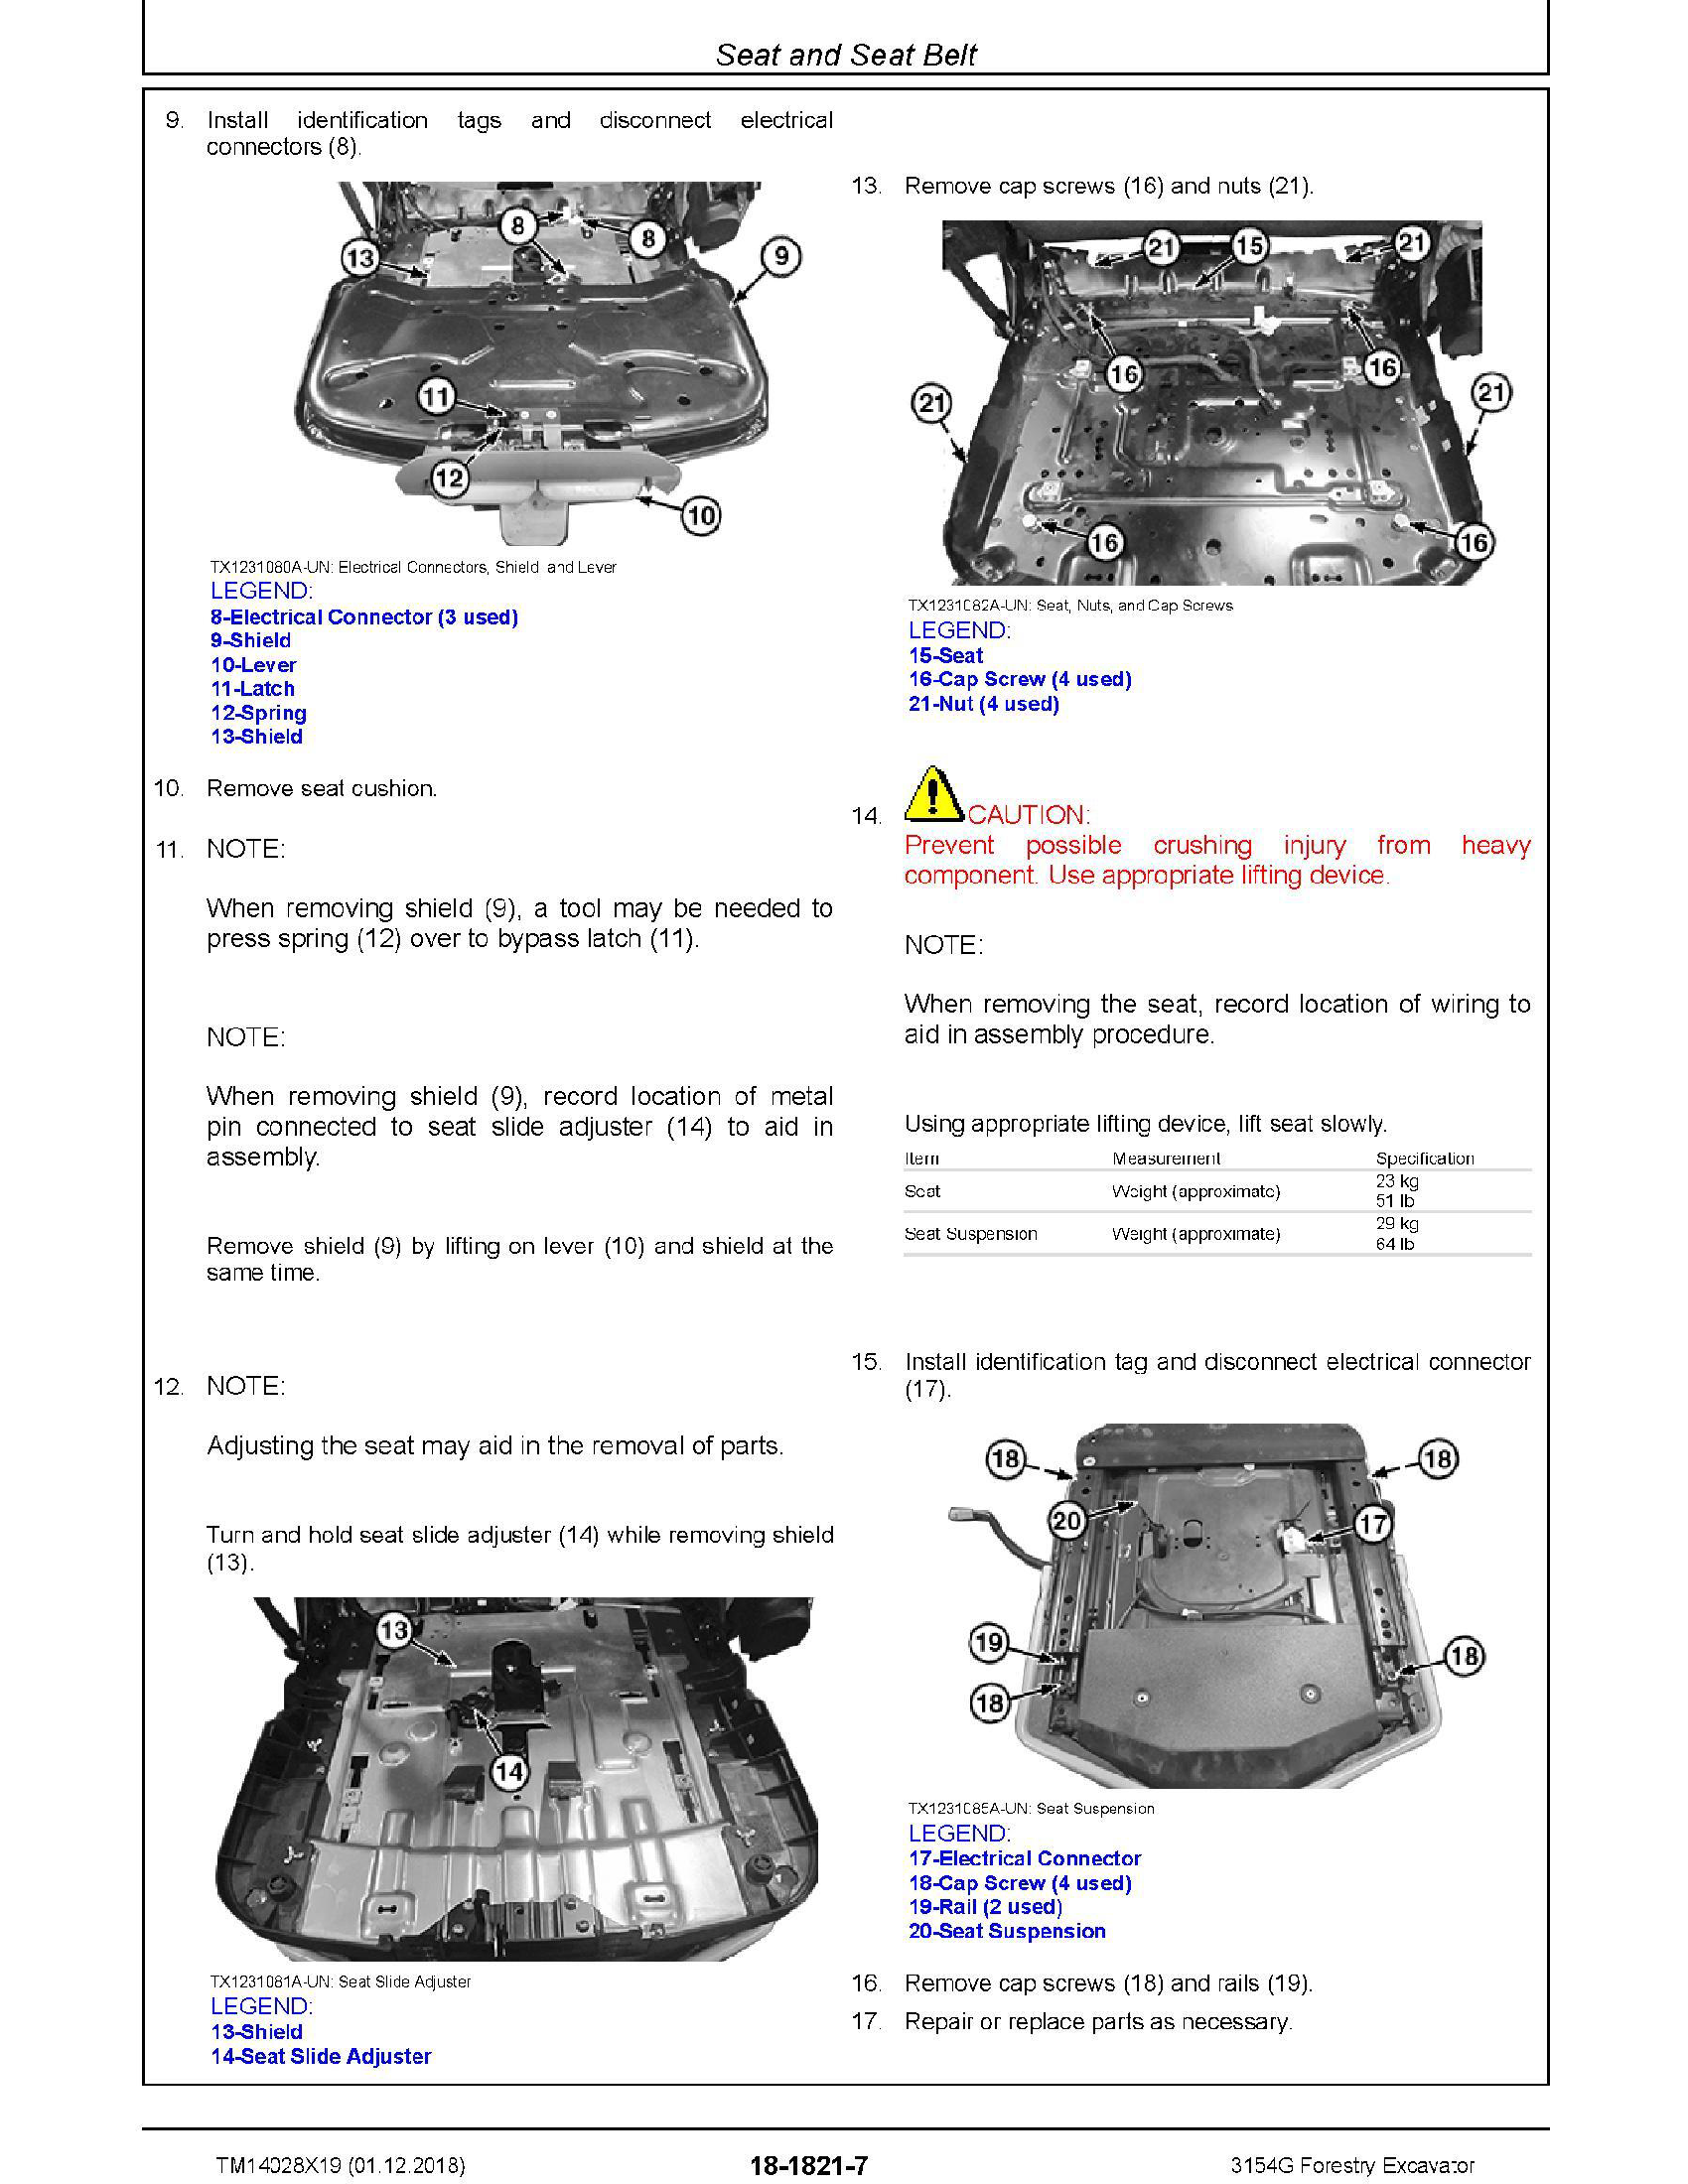 John Deere 644J manual pdf